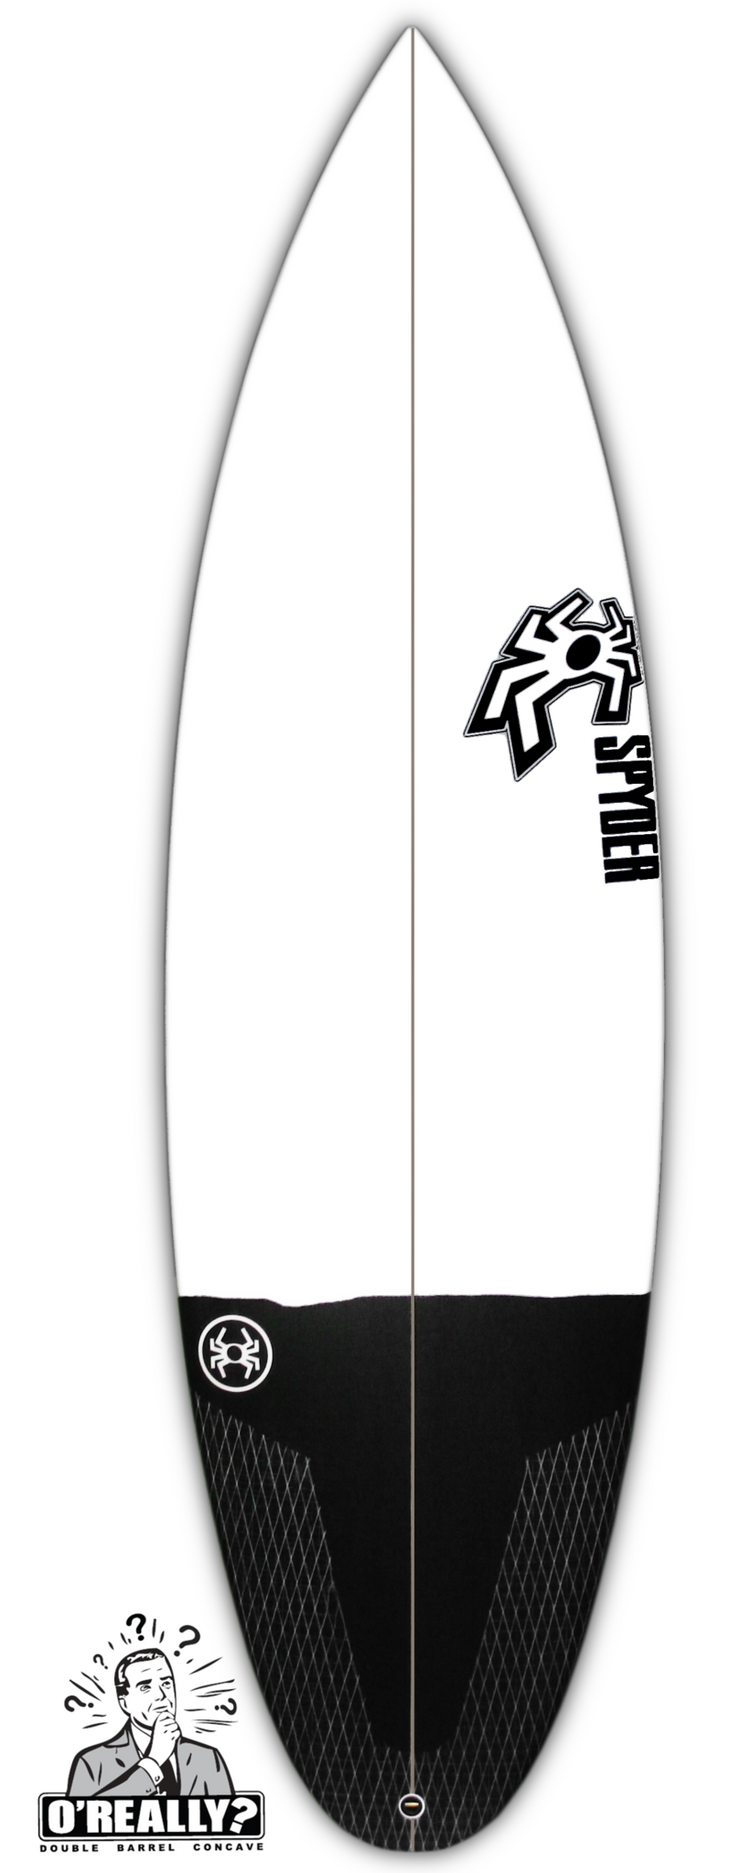 SPYDER SURFBOARDS, O'Really 5'10" B, [description] - Spyder Surf